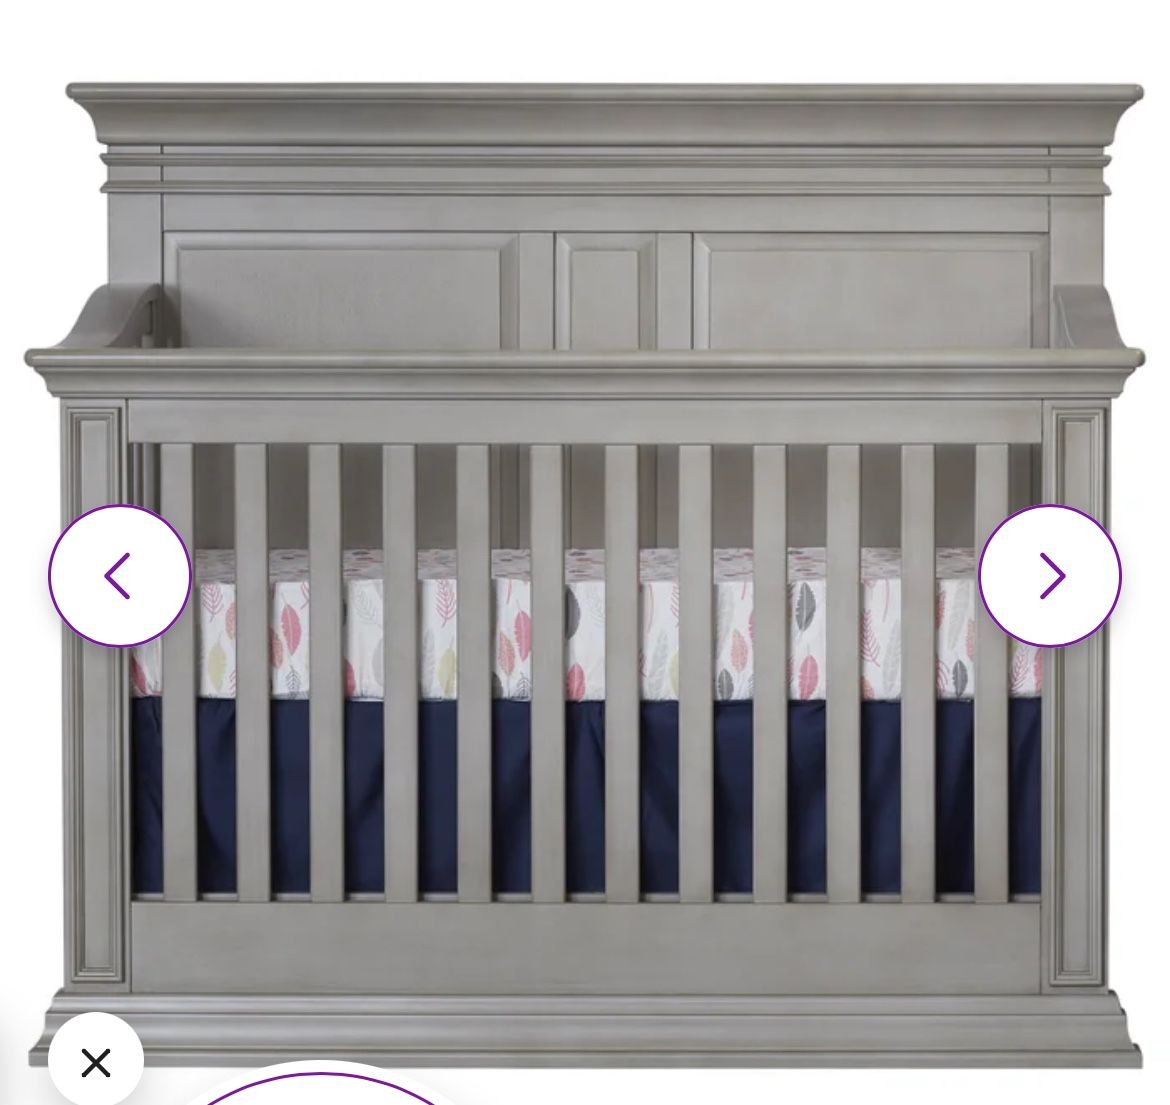 Baby Cache crib